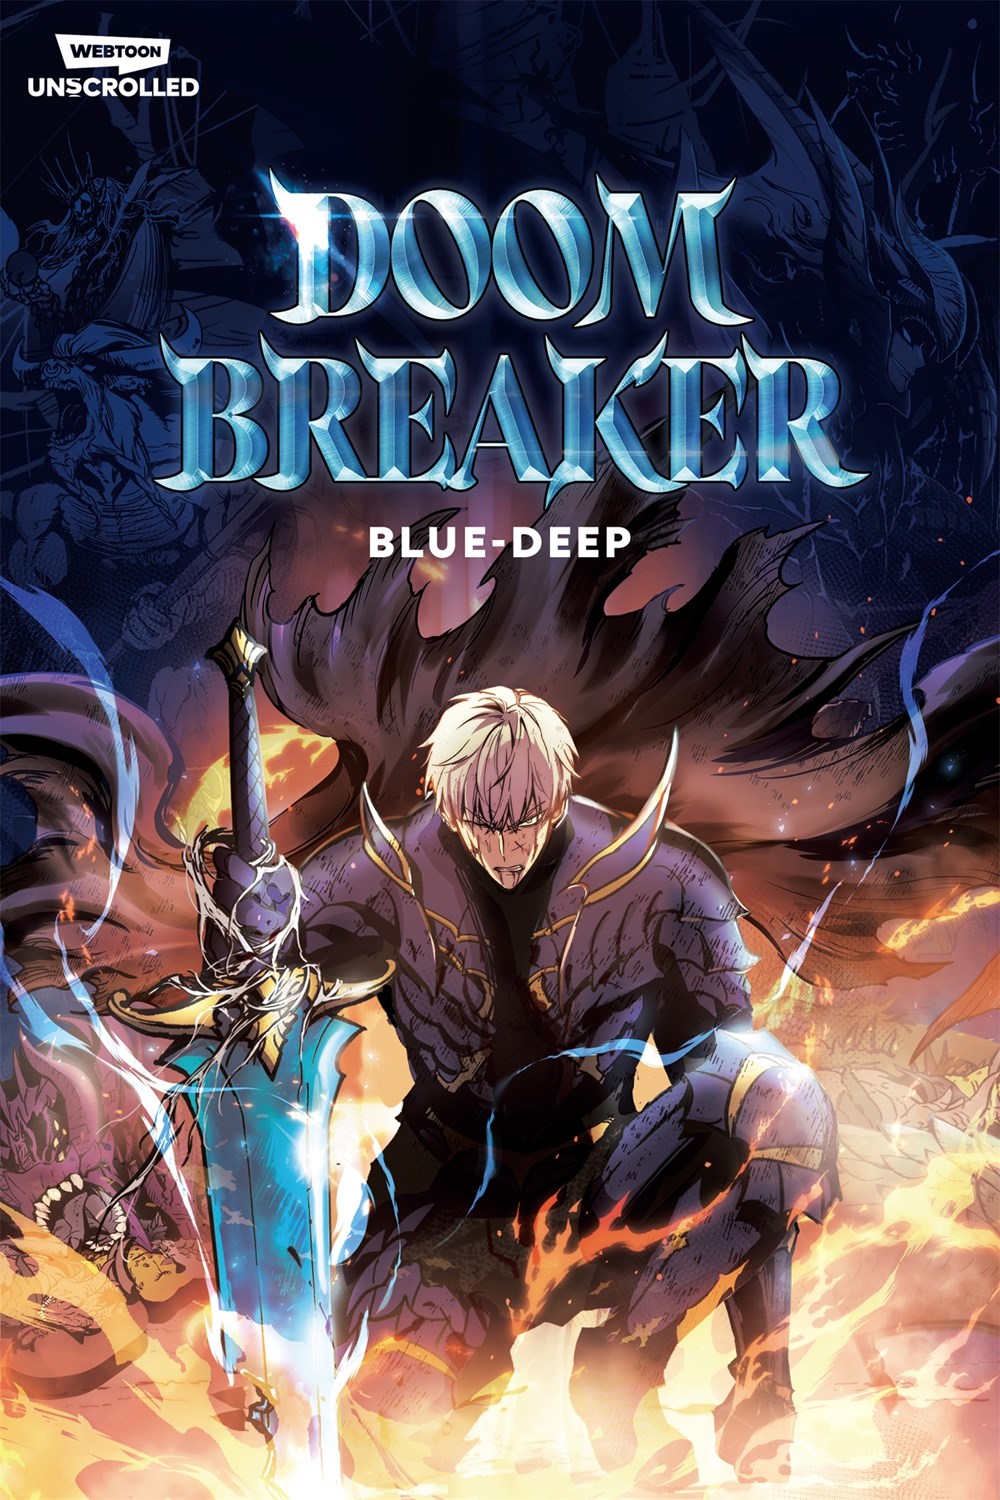 Doom Breaker Volume 1 by Blue-Deep